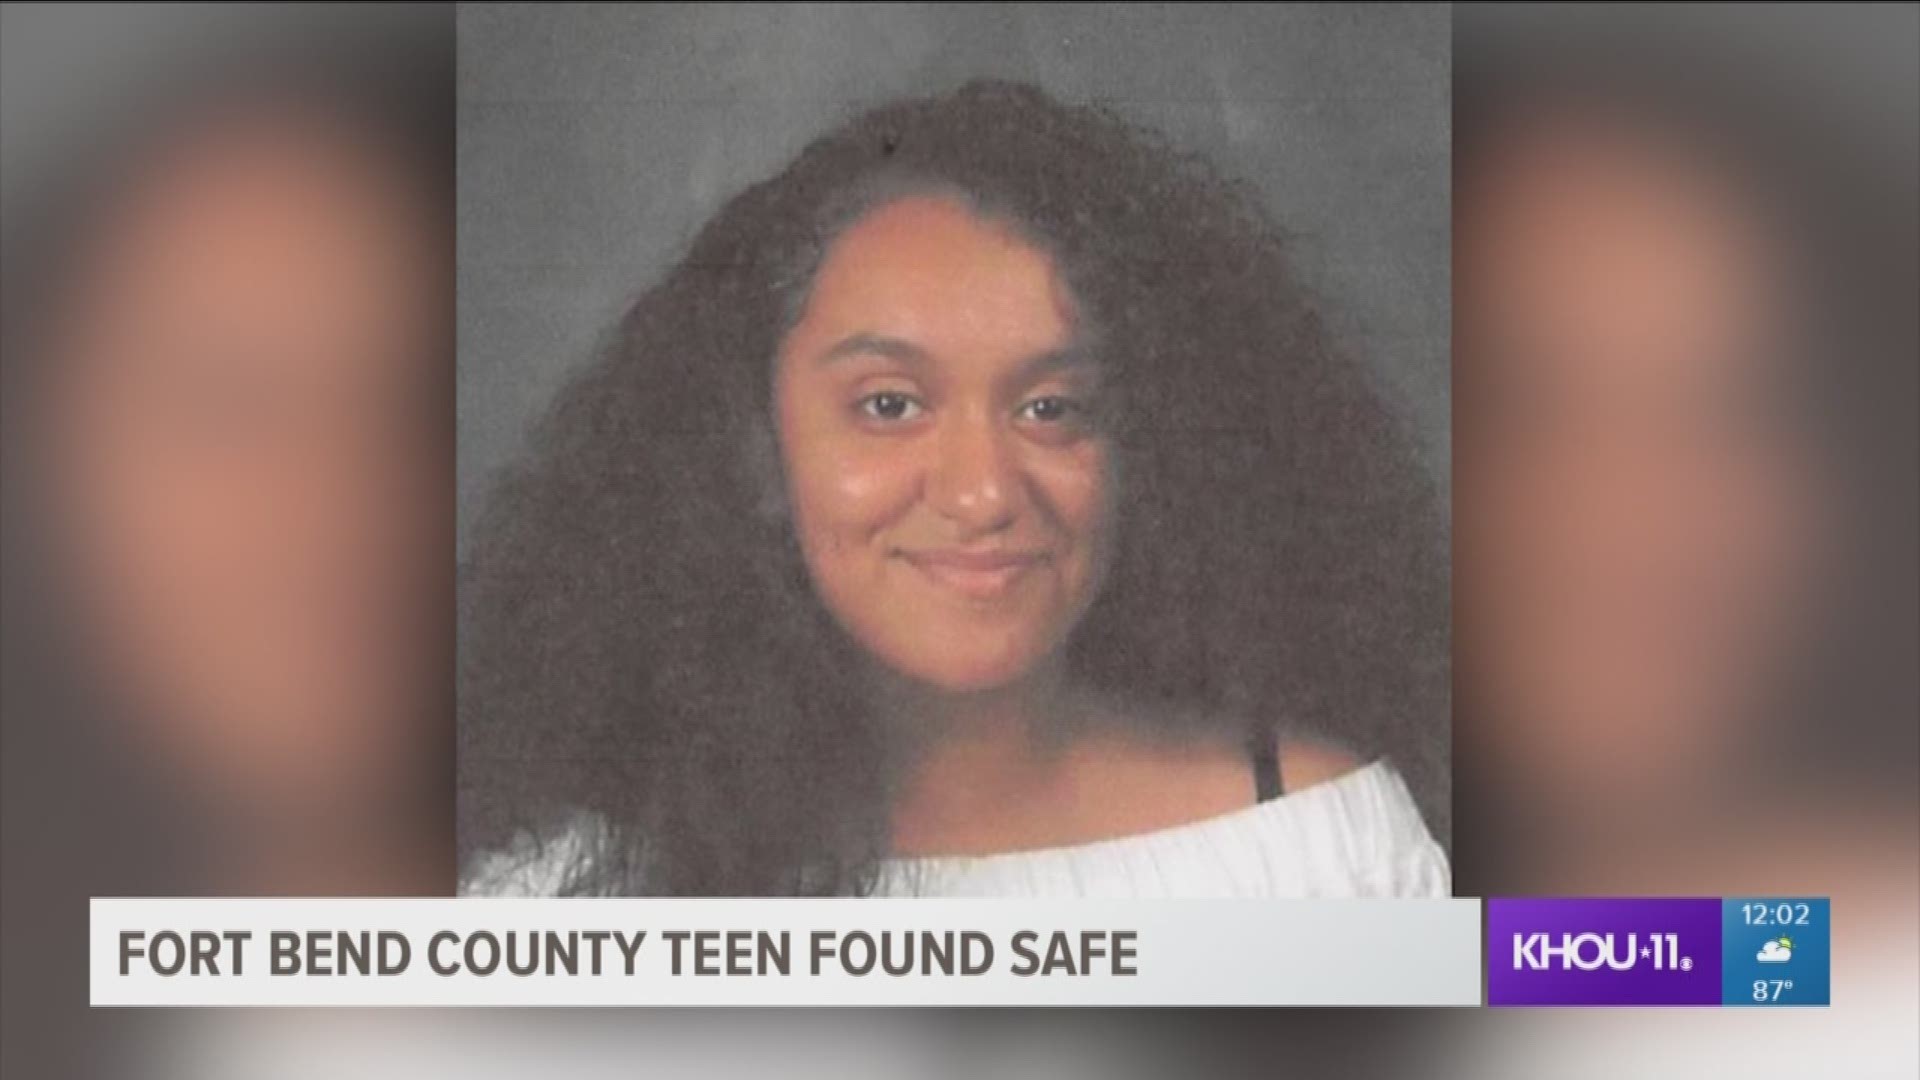 Deputies say Jennifer Vences, 14, has been found safe. 